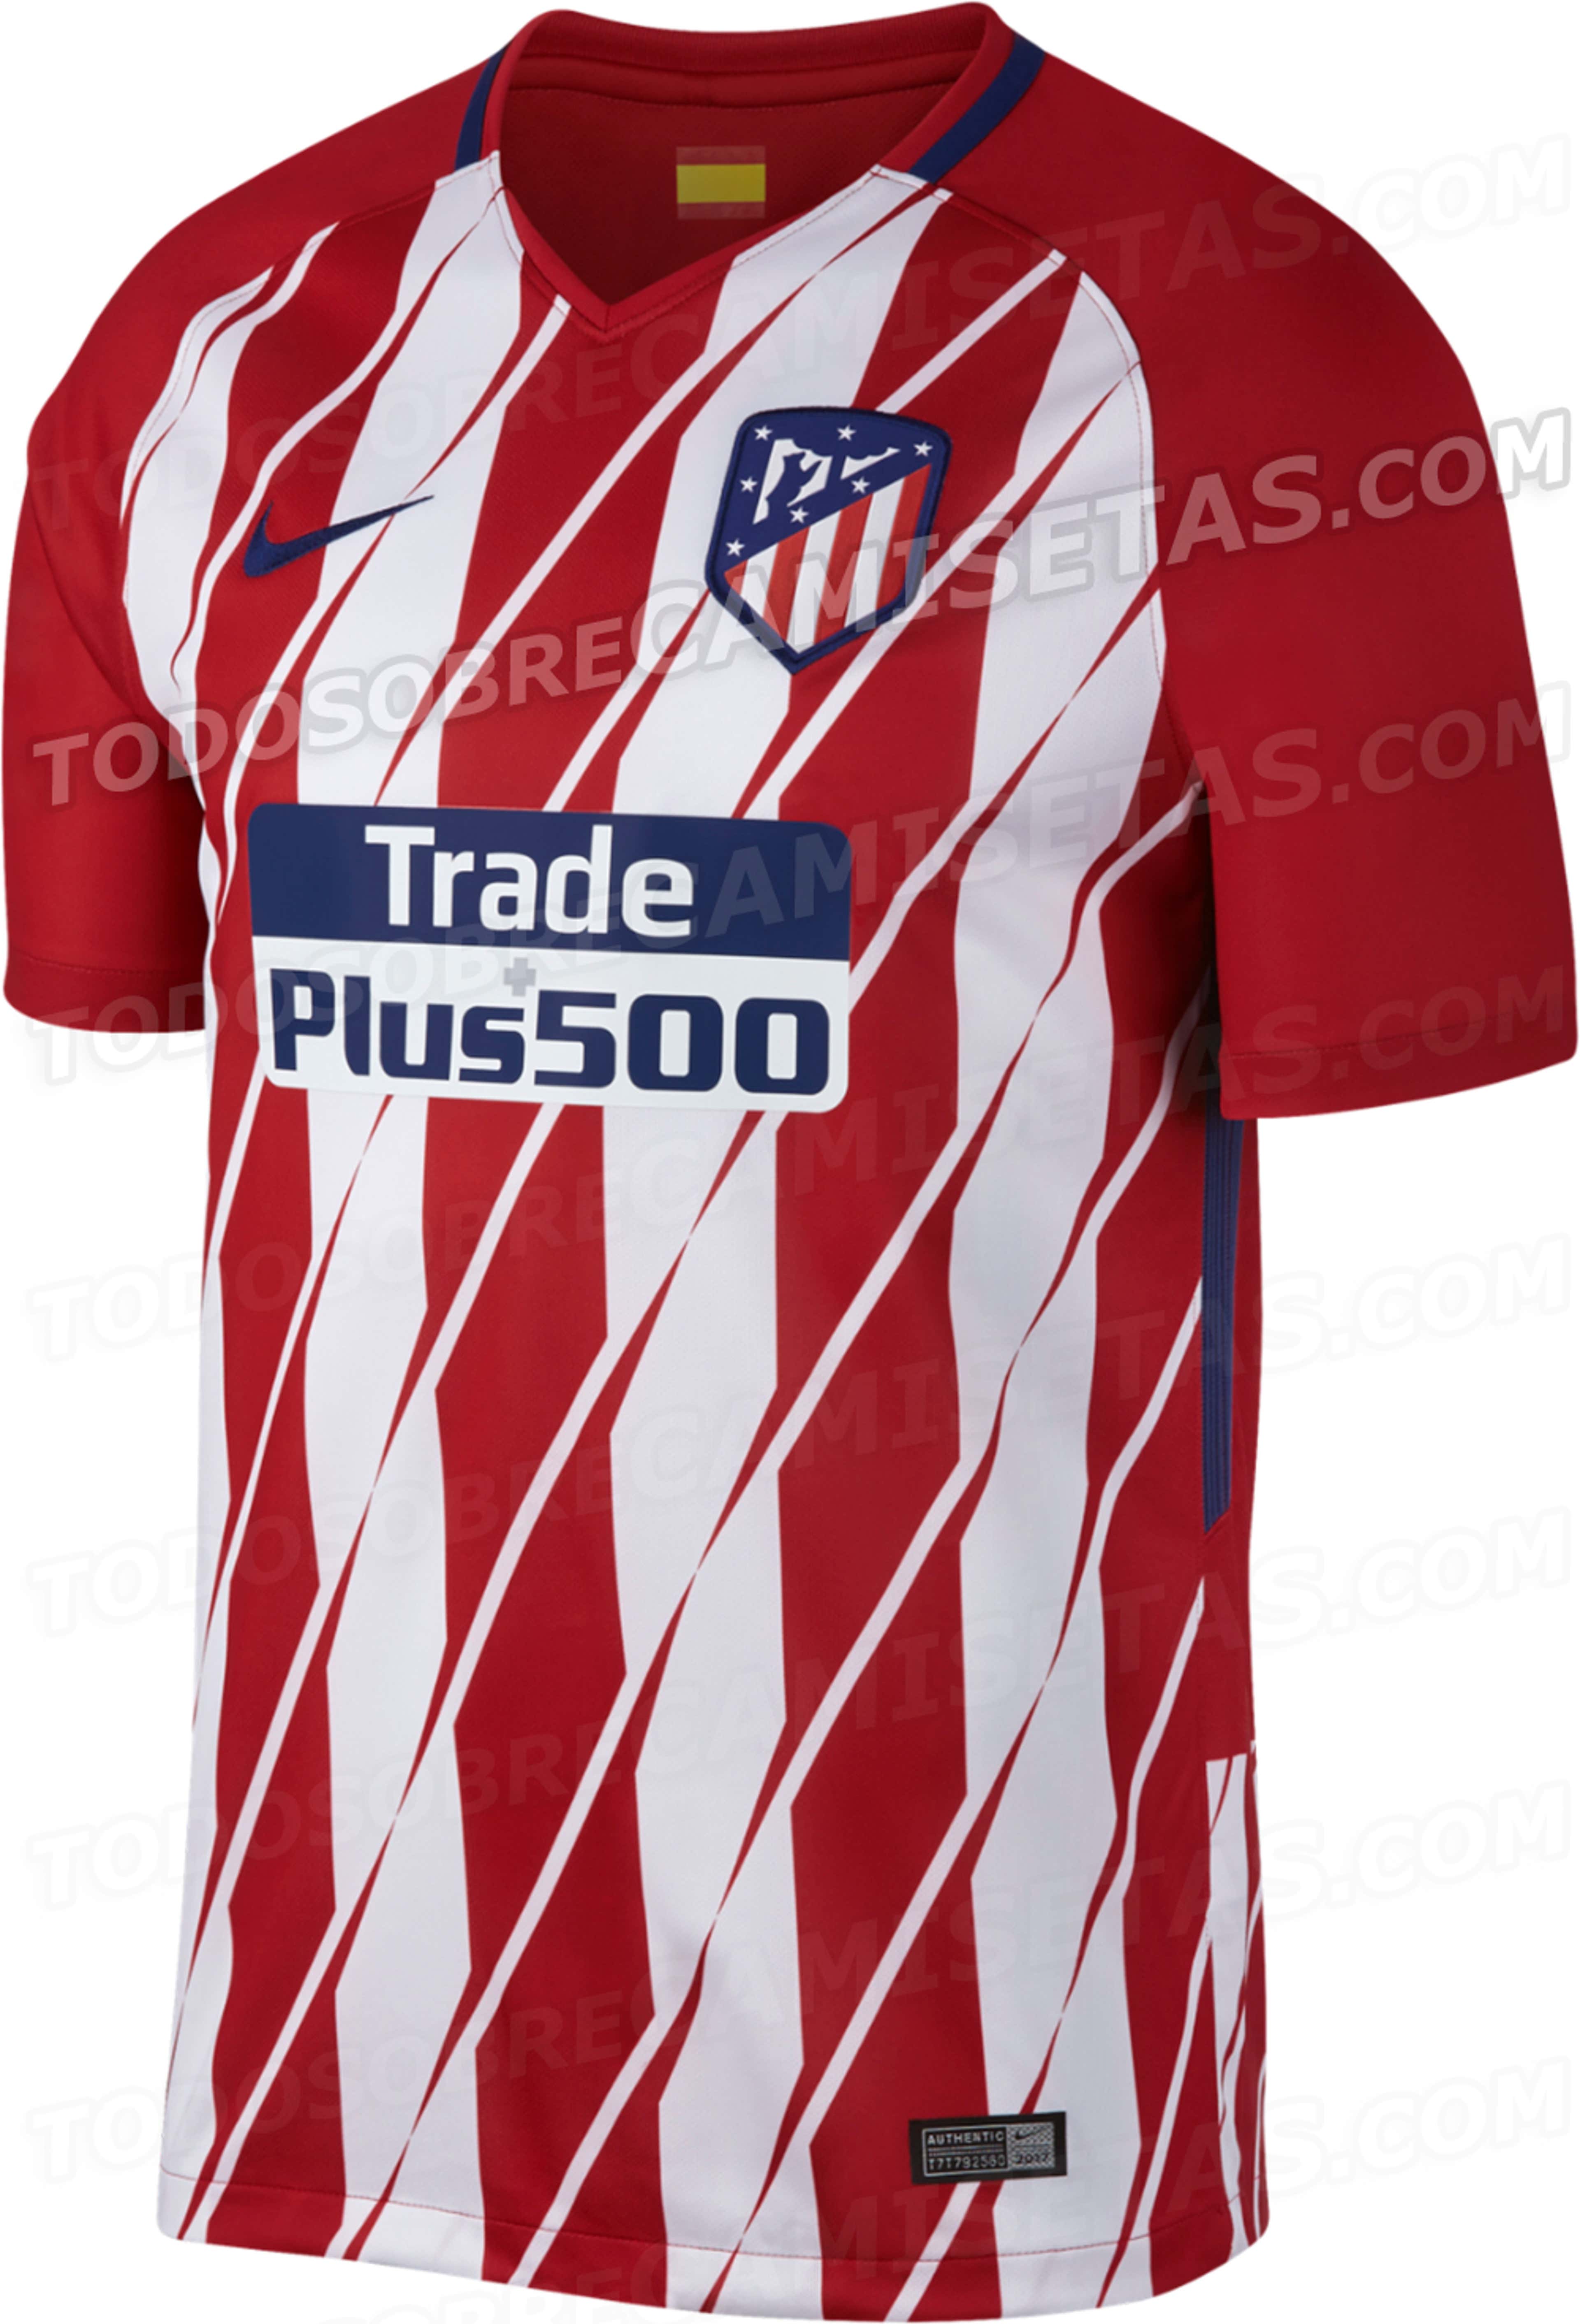 Son estas las nuevas camisetas del Atlético?